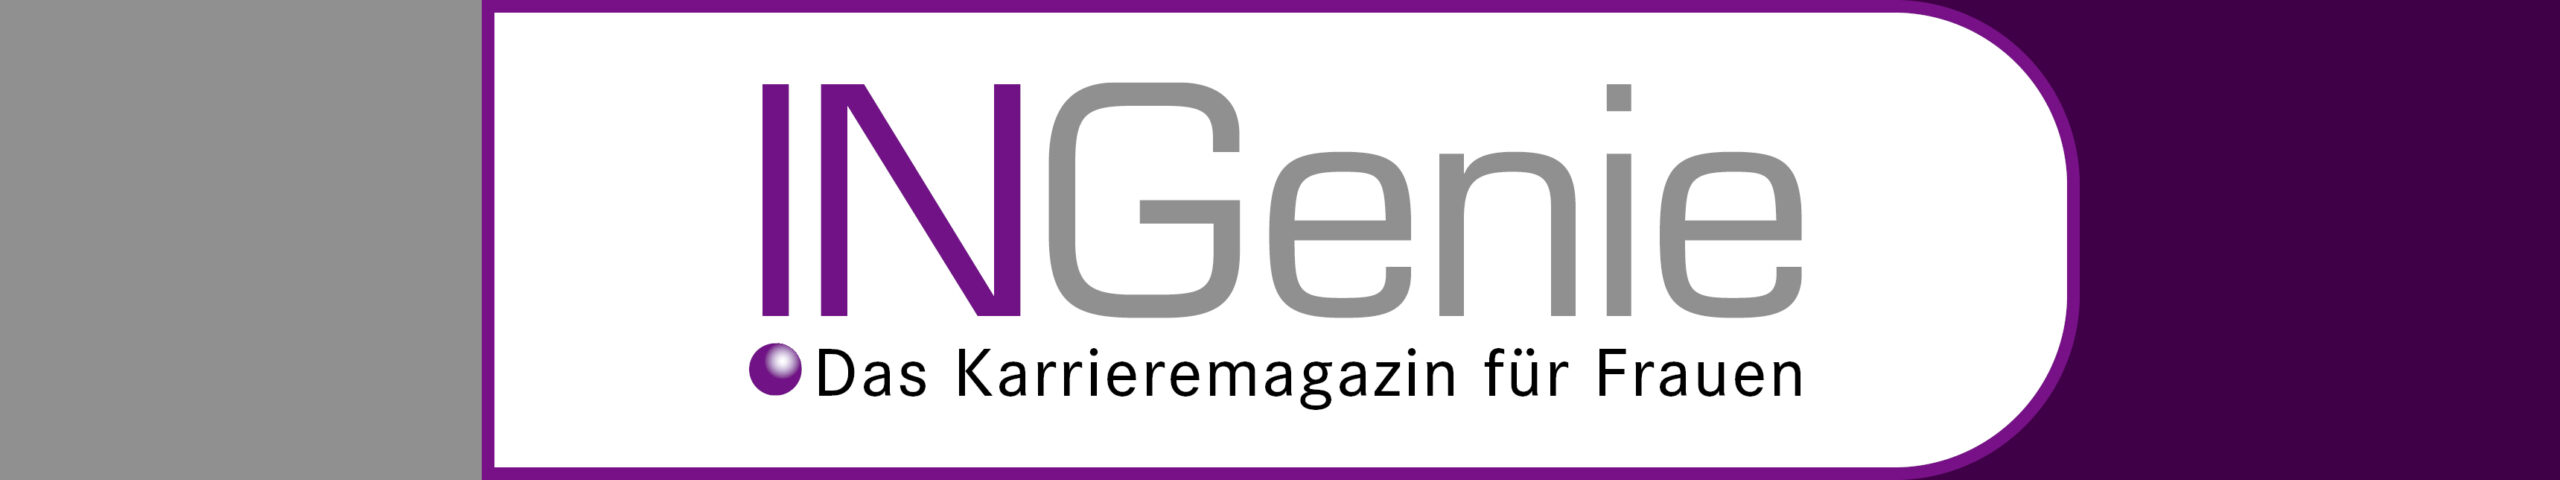 ingenie-power Logo